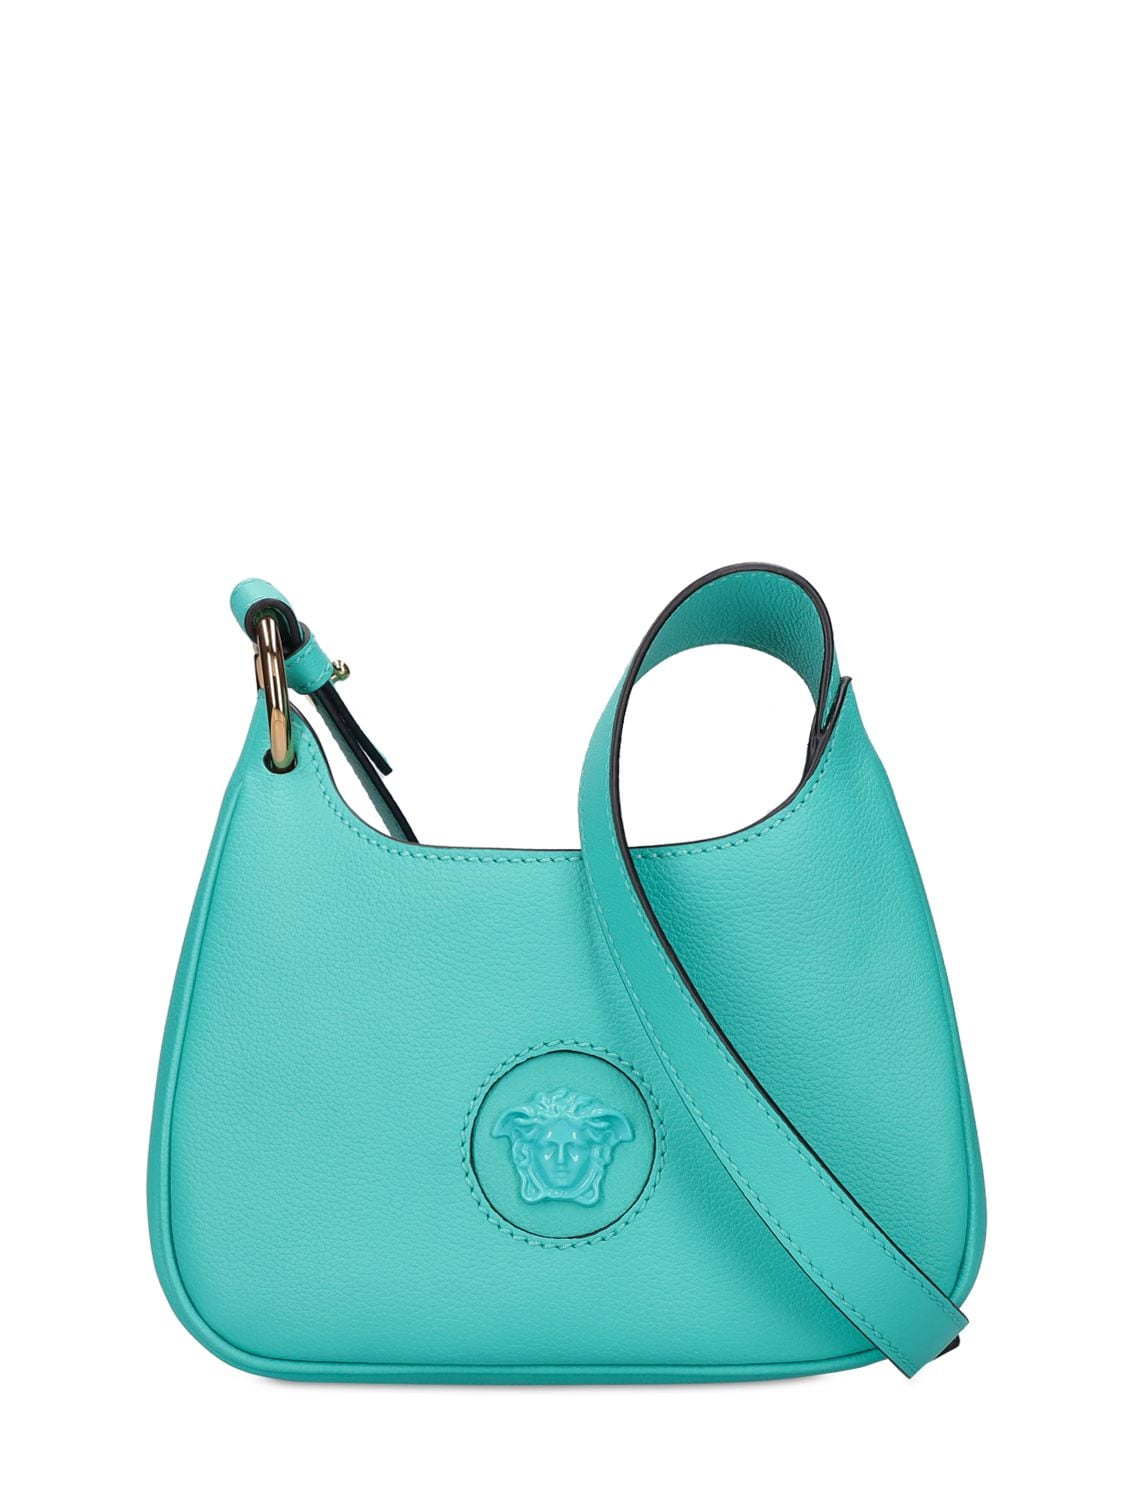 Versace Medusa Leather Shoulder Bag In Turquoise